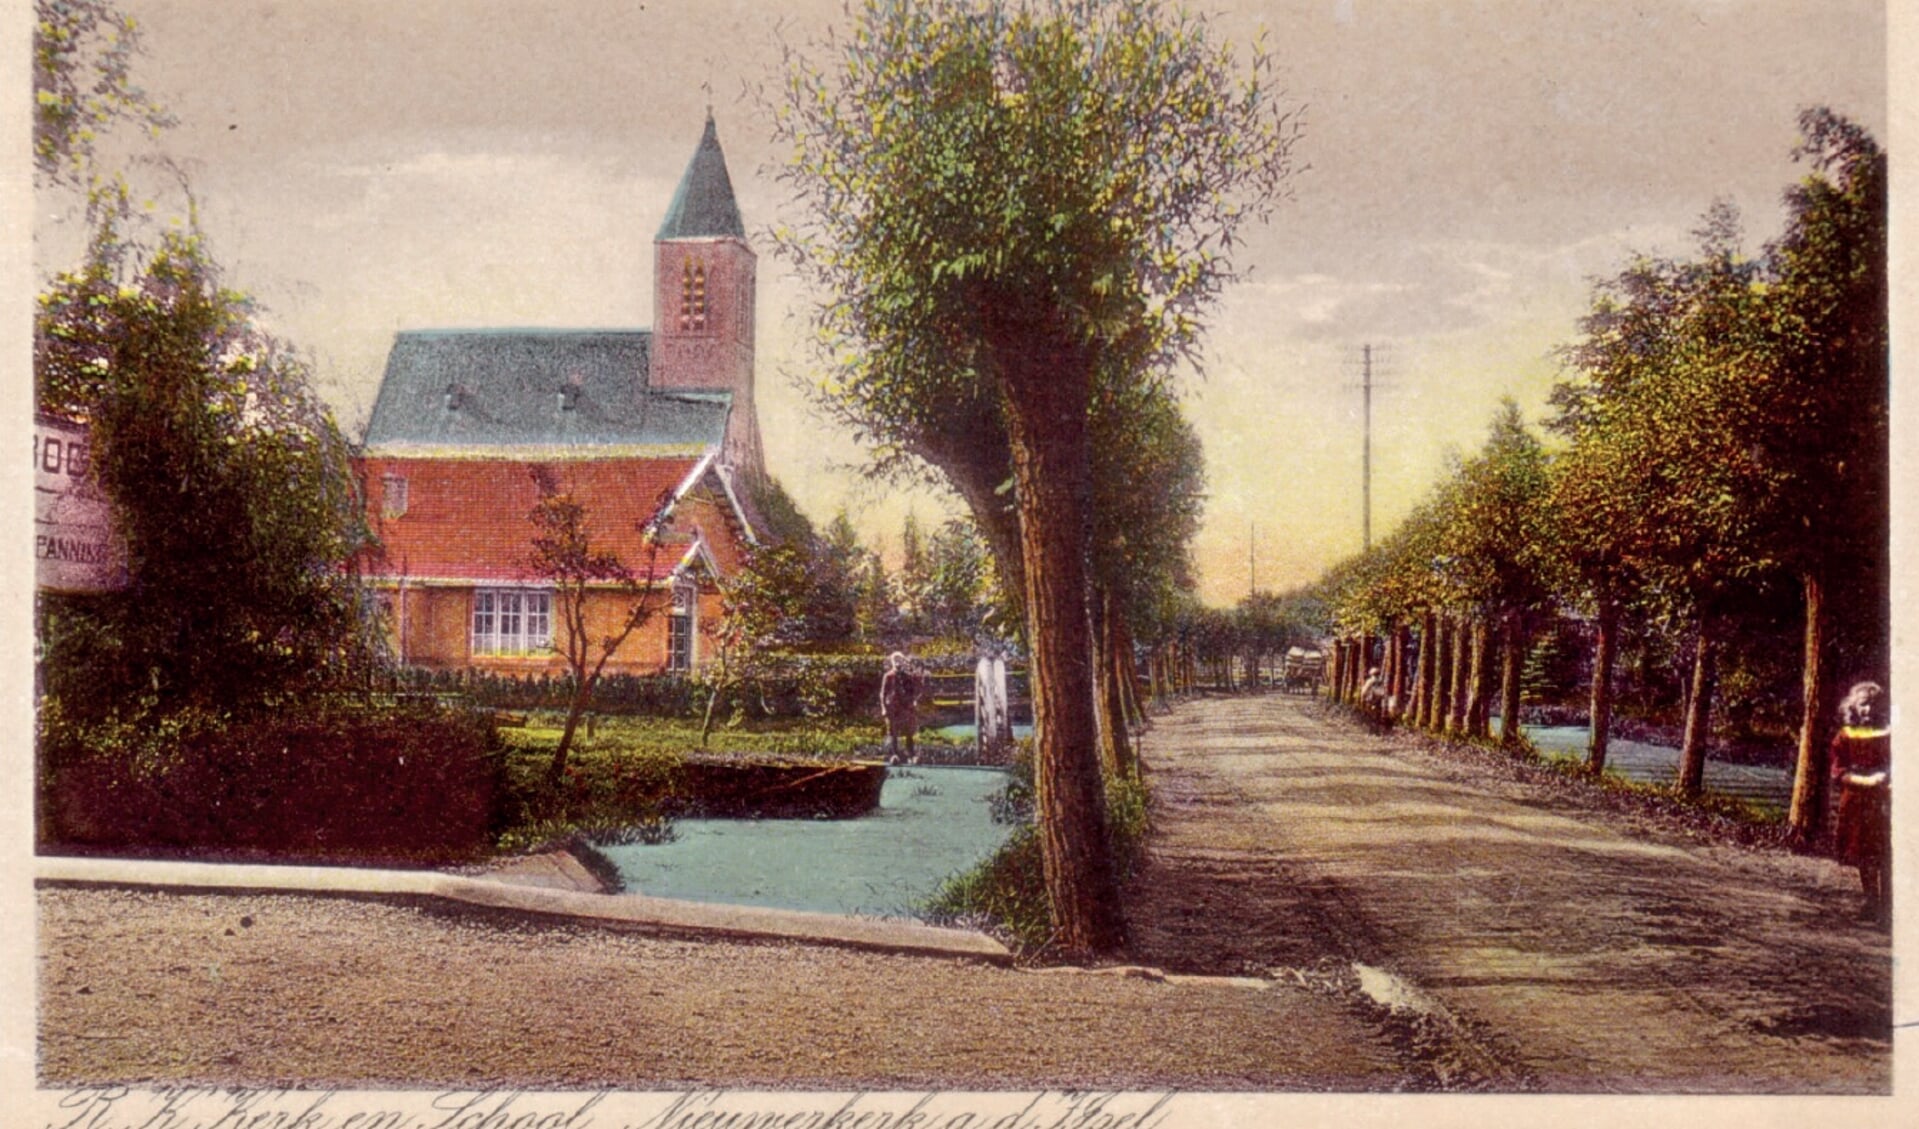 Prent van de ’s-Gravenweg (circa 1925) met zicht op de katholieke school en de Josephkerk.